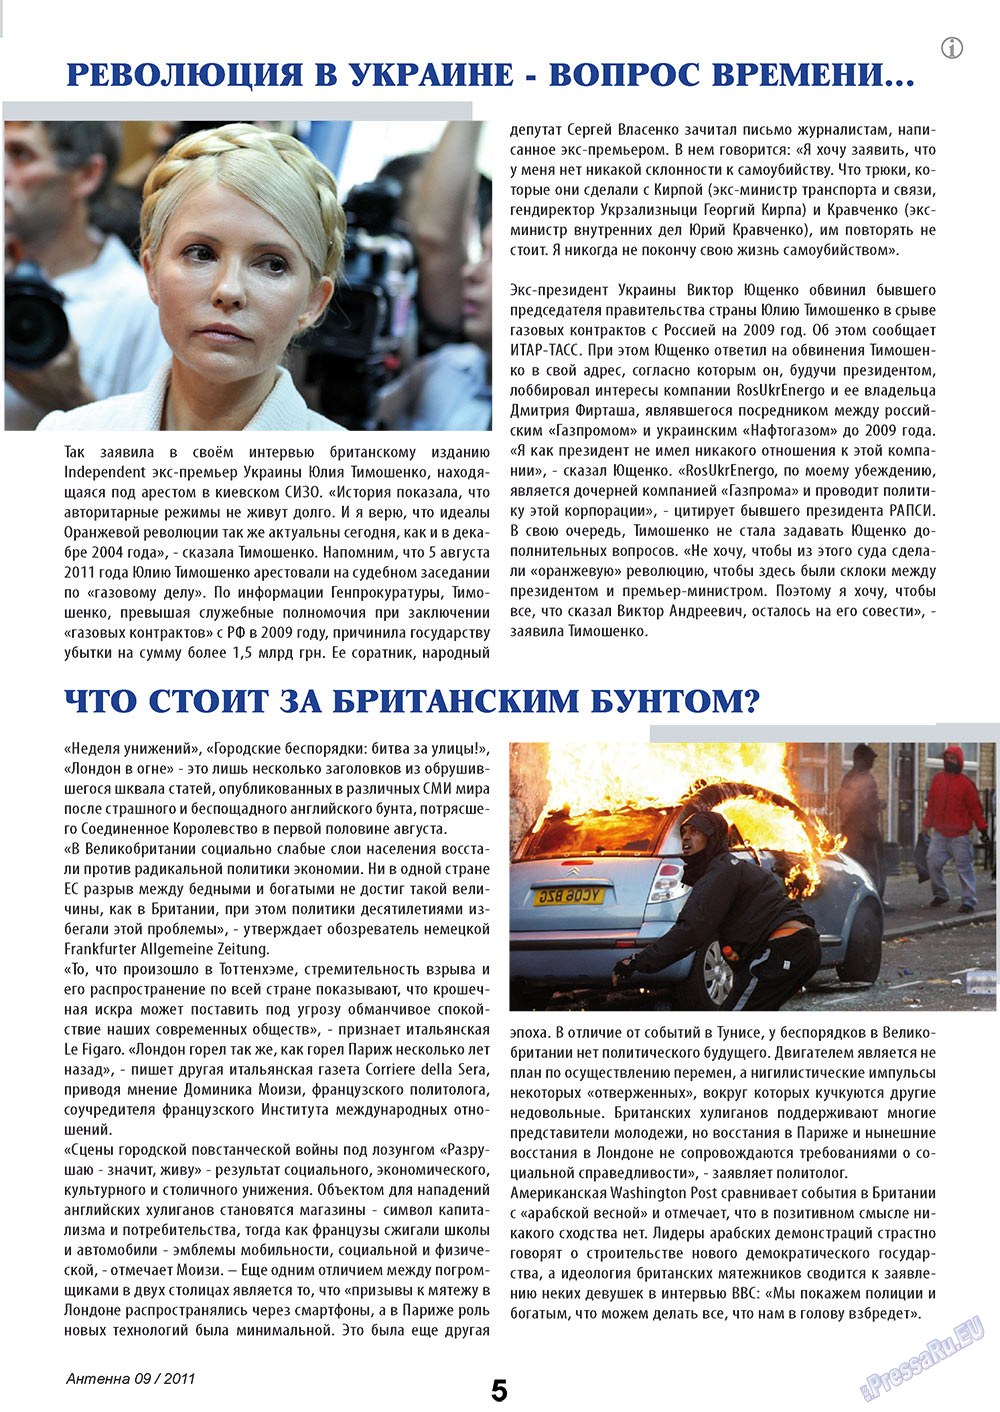 Антенна, журнал. 2011 №9 стр.5